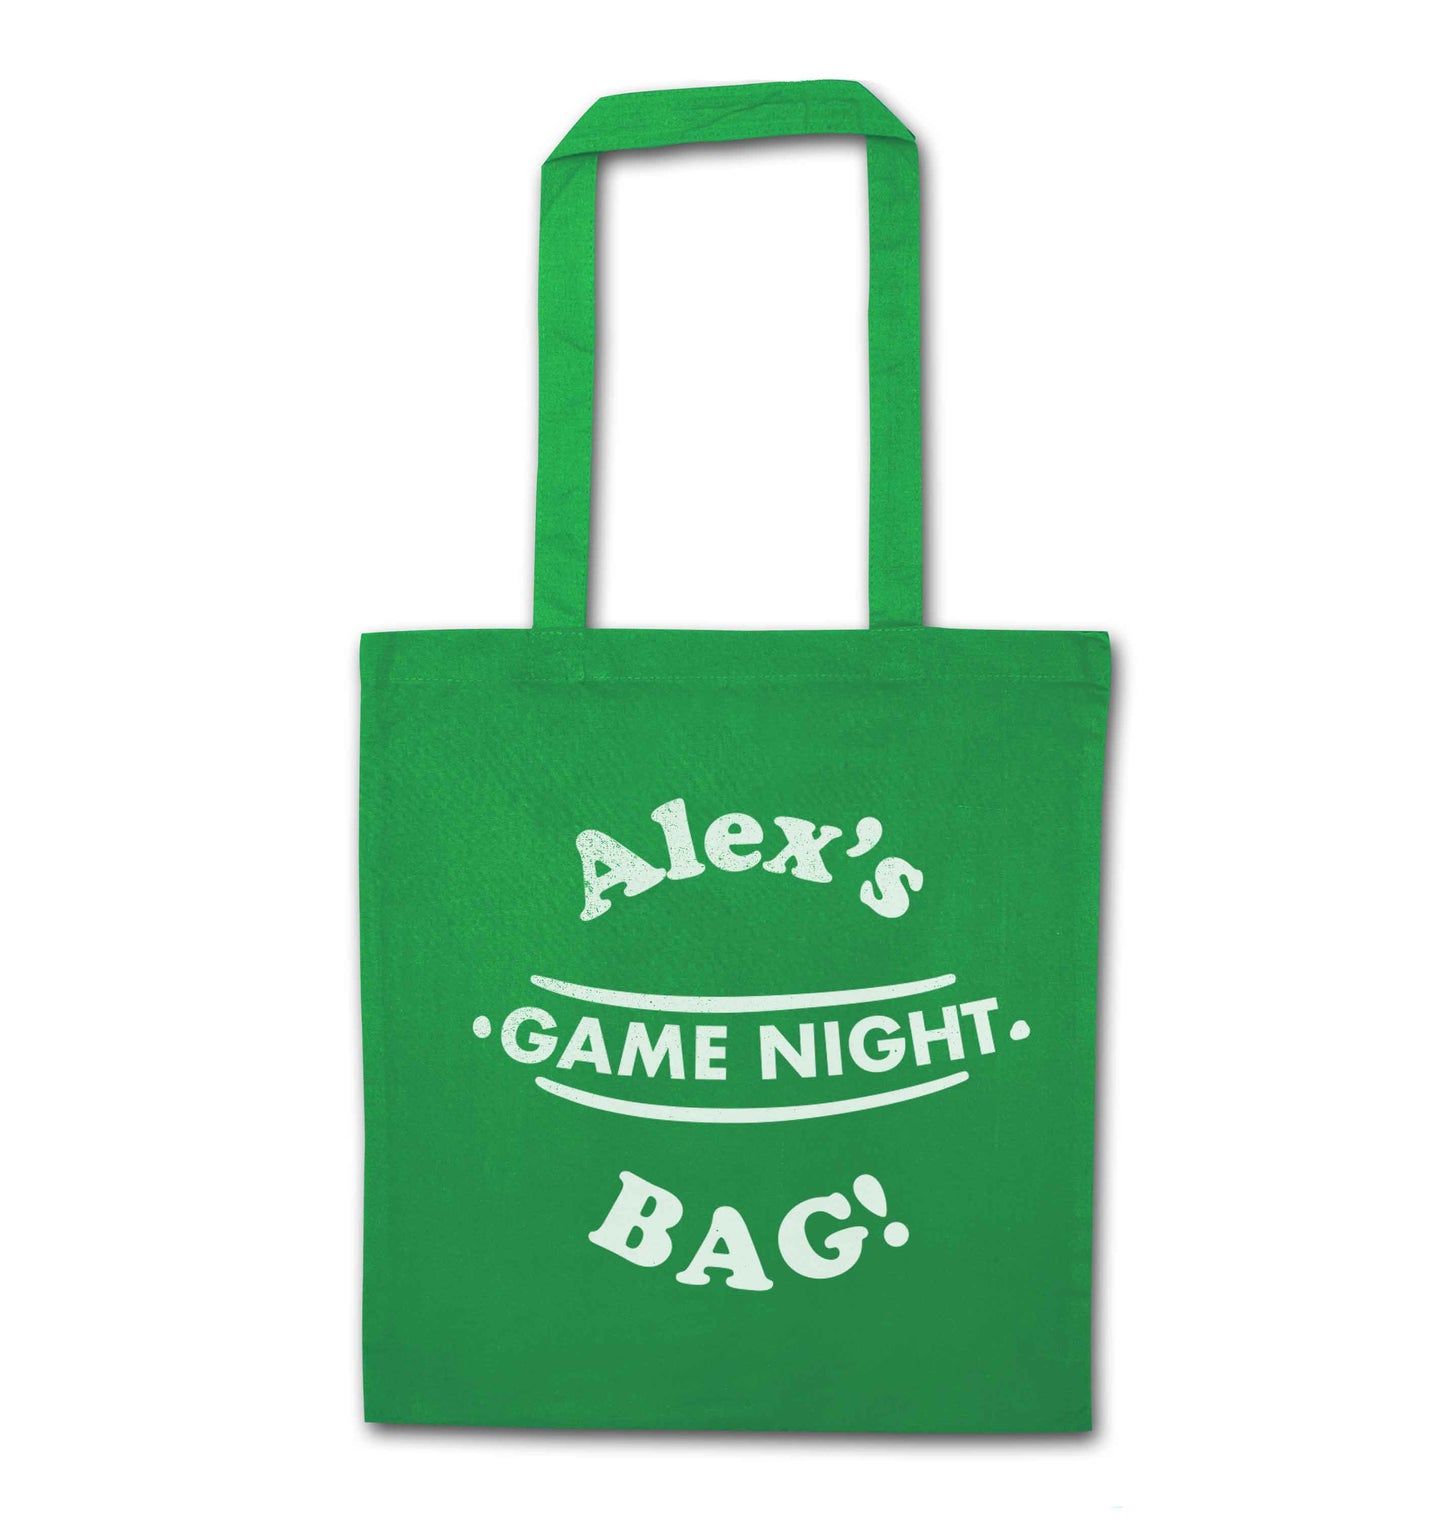 Personalised game night bag green tote bag